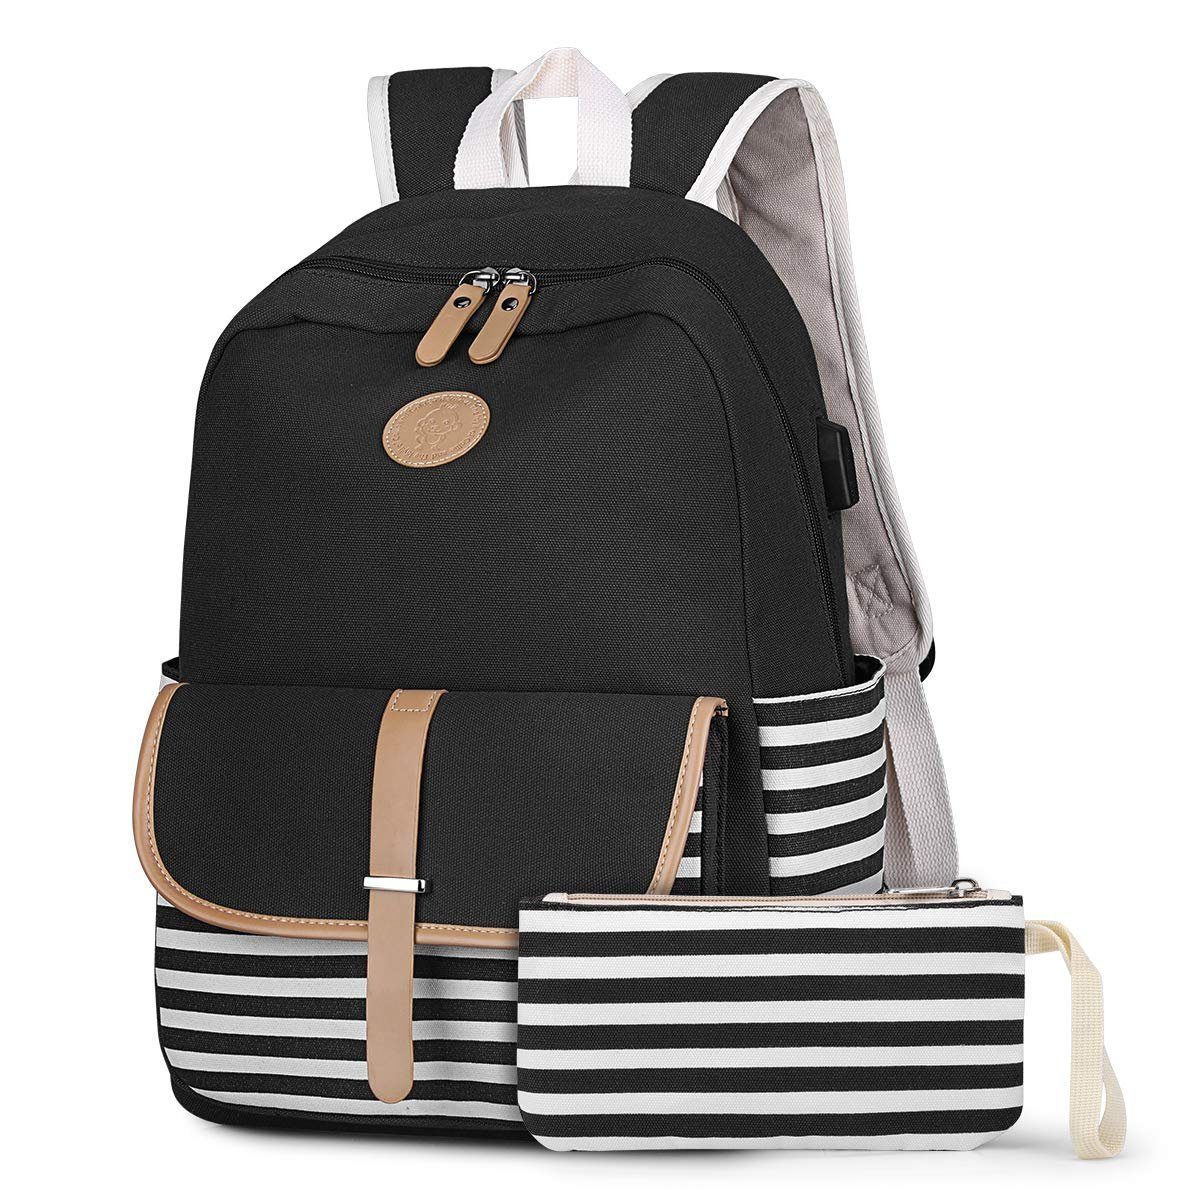 Damen Mädchen Schulrucksack Schule Schulranzen Backpack Rucksack Reise Bags 3pcs 